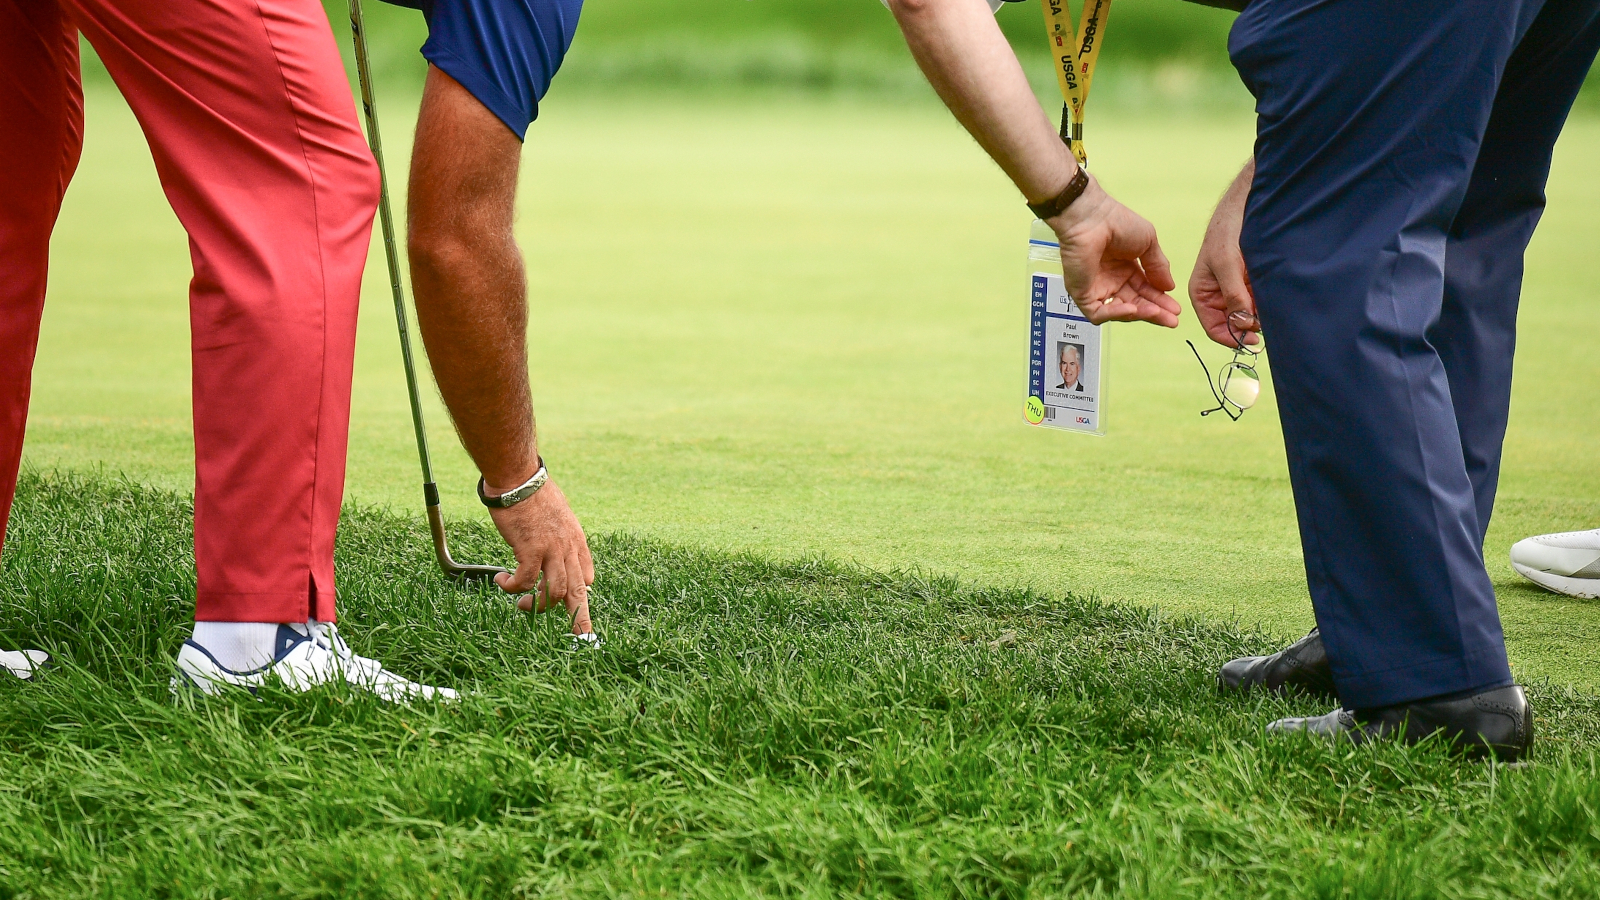 Auch Profis kommen auf dem Platz immer wieder in Berührung mit den Golfregeln. © USGA via golfsupport.nl/Simon Bruty